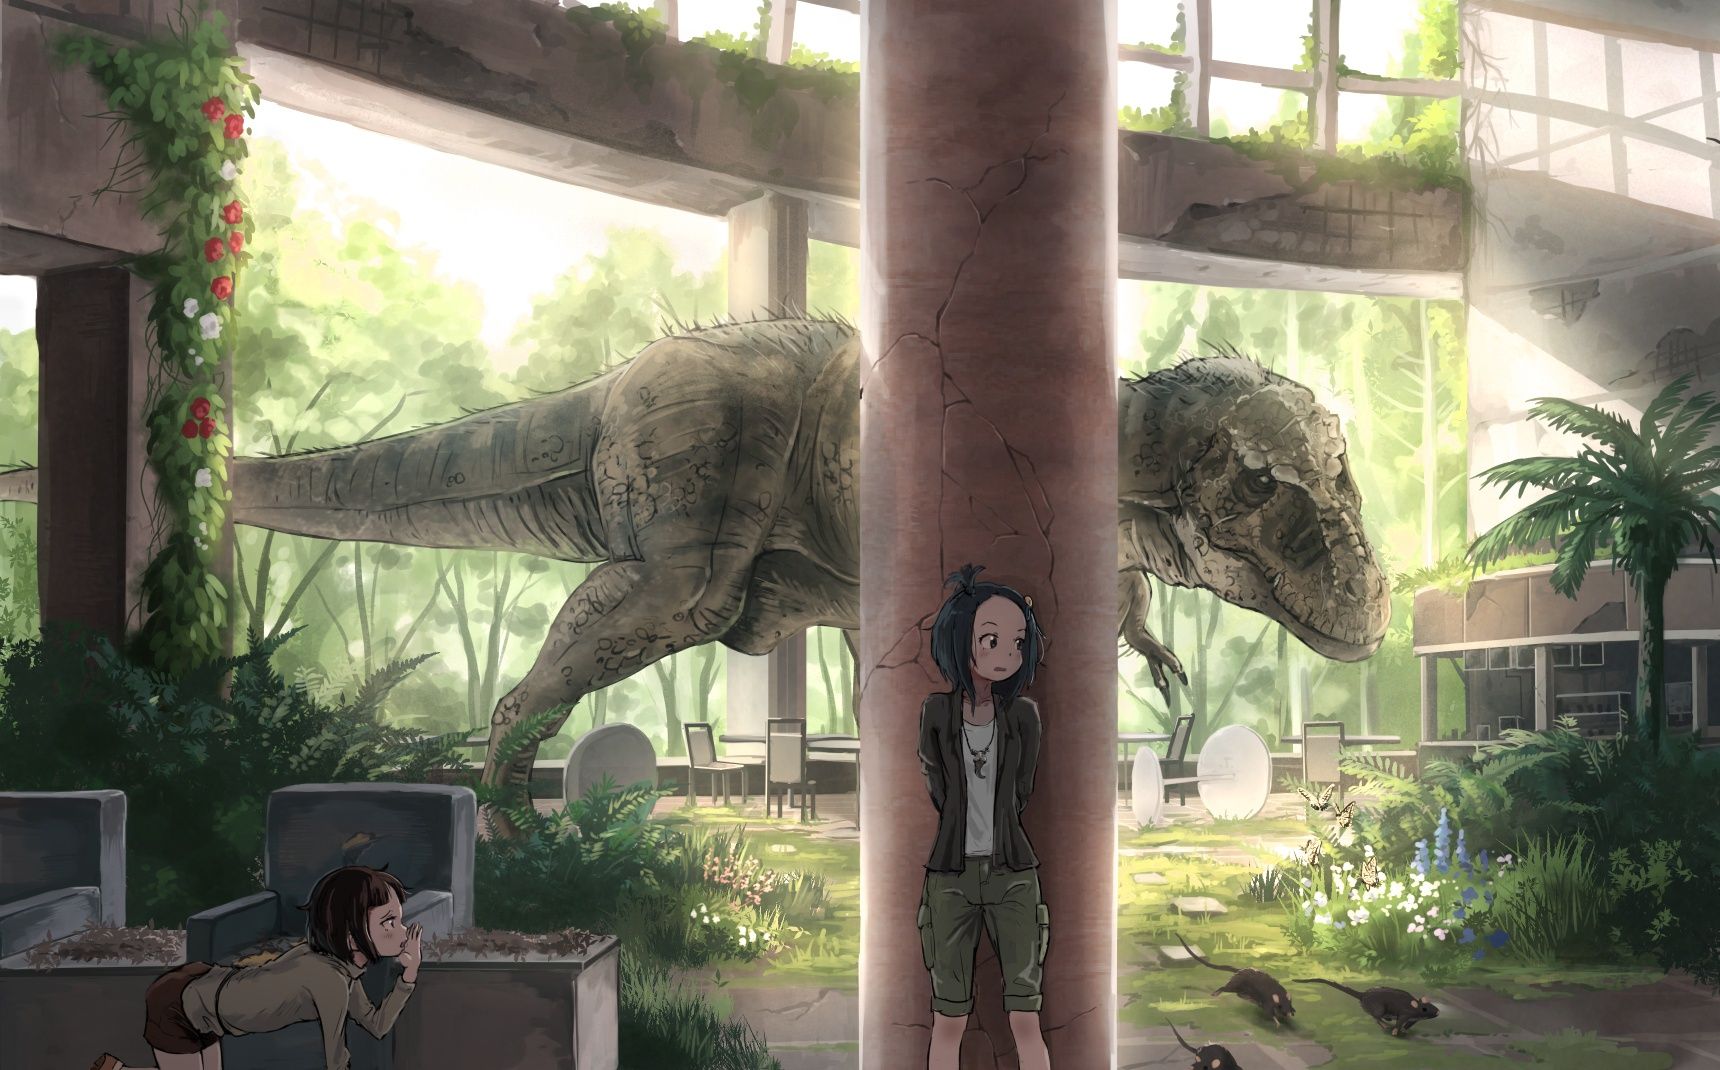 Wallpaper Building, Anime Girls, Dinosaur, Scared